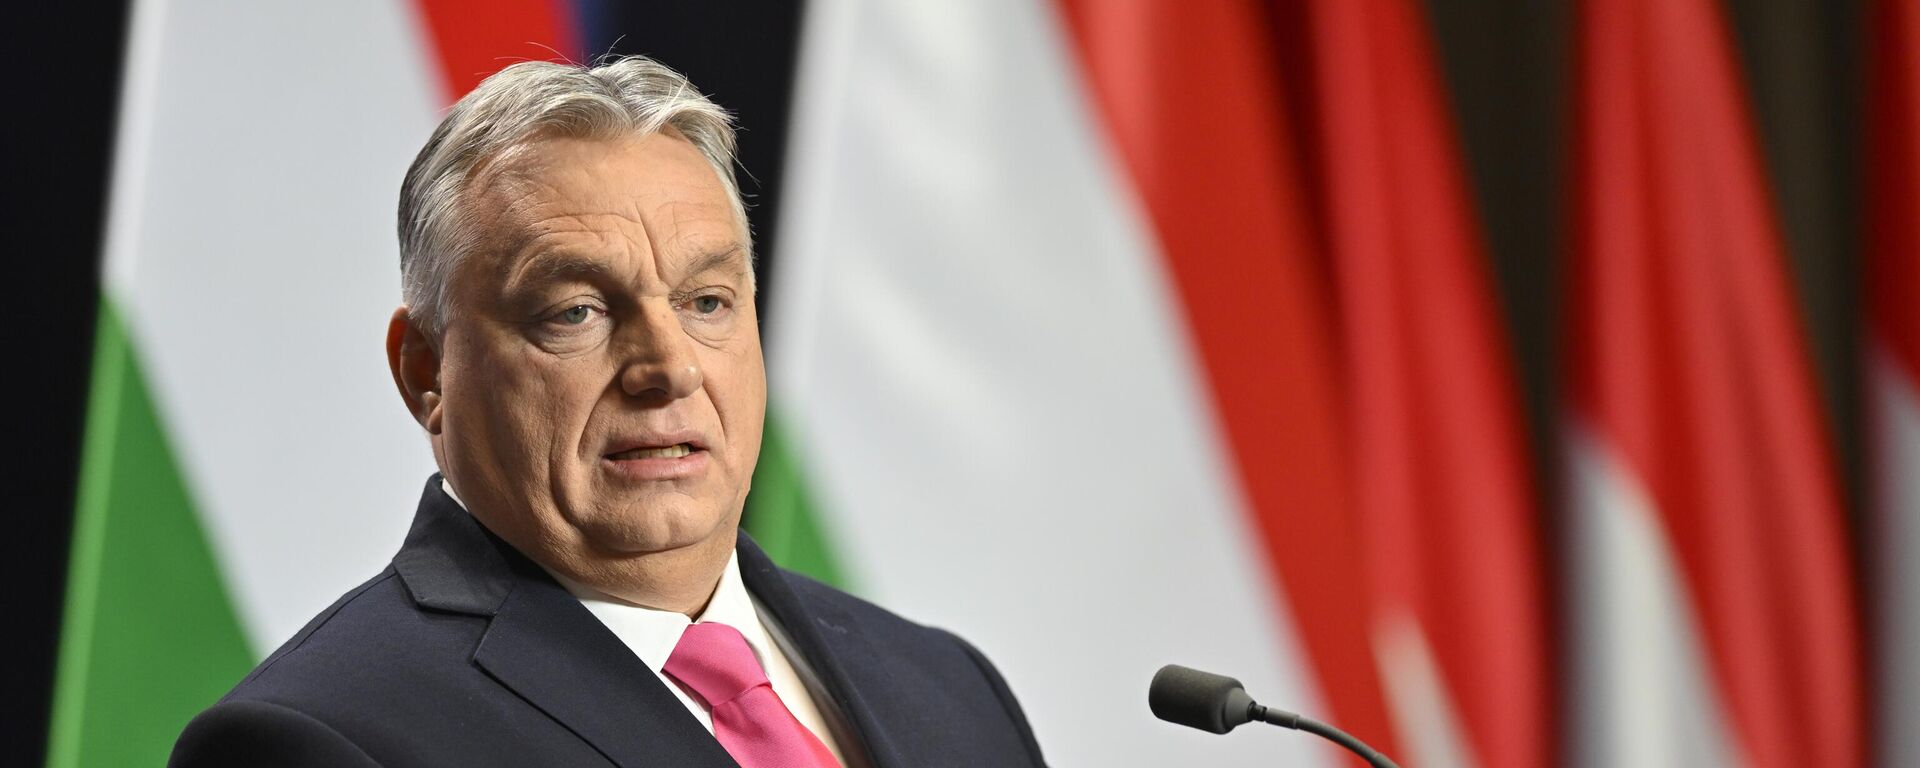 Viktor Orban, el primer ministro húngaro, habla durante su rueda de prensa internacional anual en Budapest, Hungría, el 21 de diciembre de 2023. - Sputnik Mundo, 1920, 21.12.2023